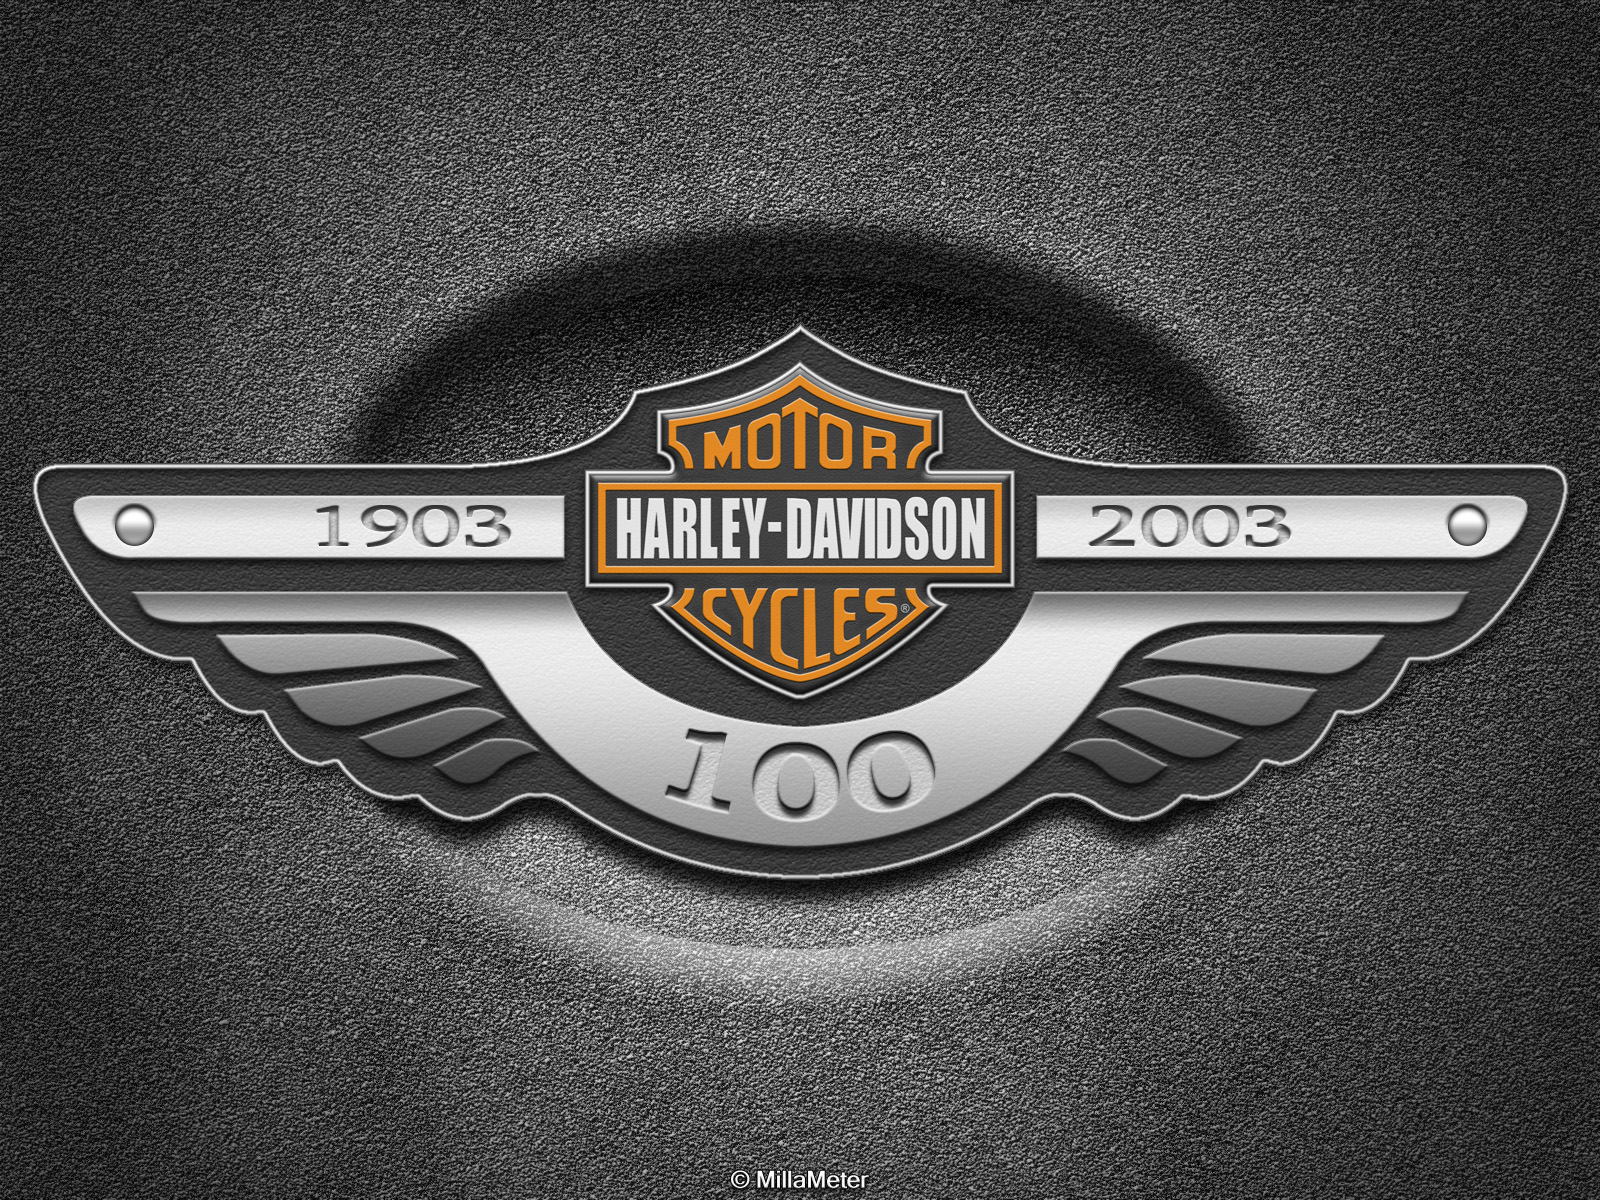 harley davidson, motorcycles, vehicles